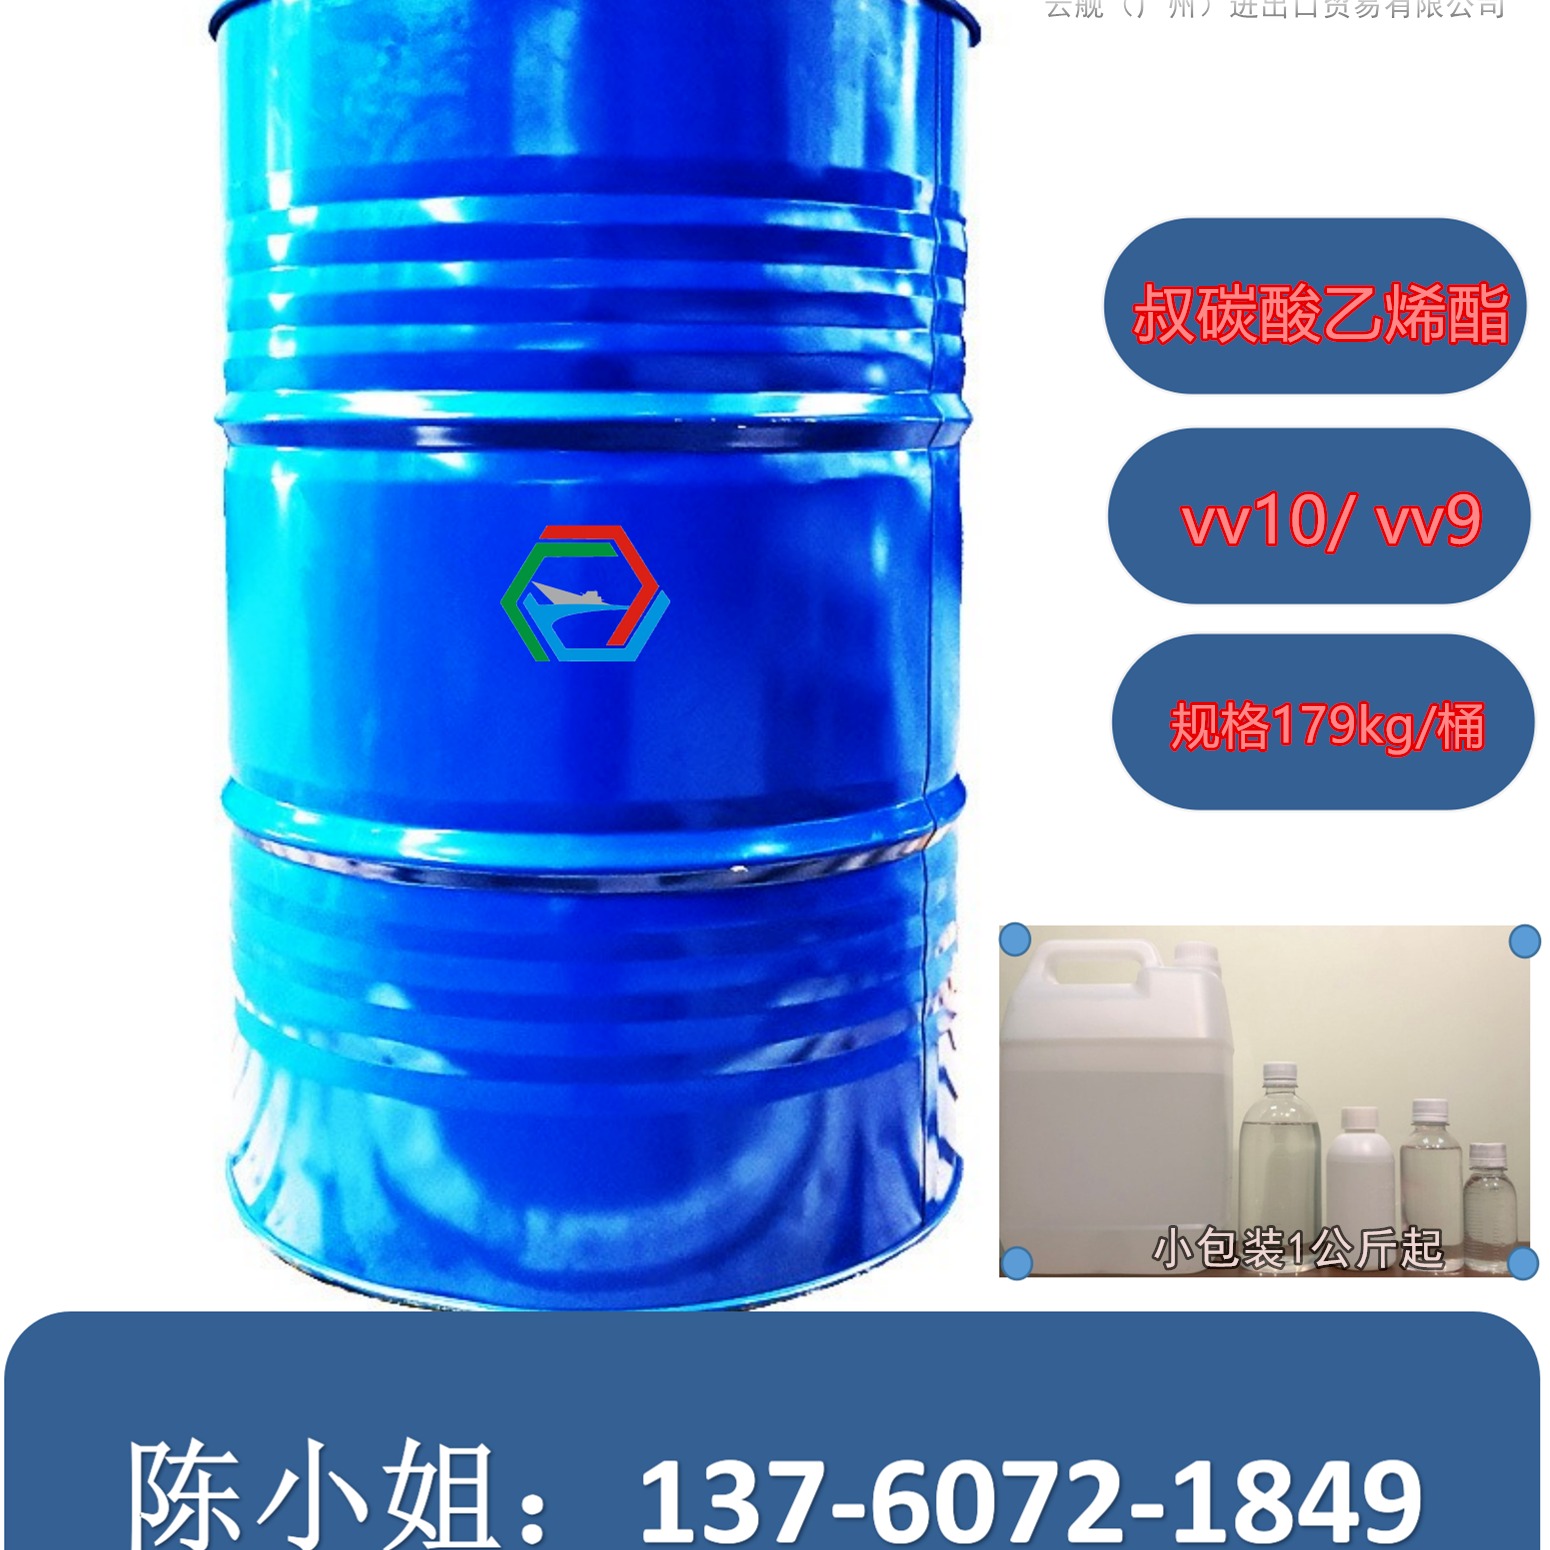 叔碳酸乙烯酯荷兰 供应 vv-10 vv9  价格可谈 179KG/桶-供应广东广州图片